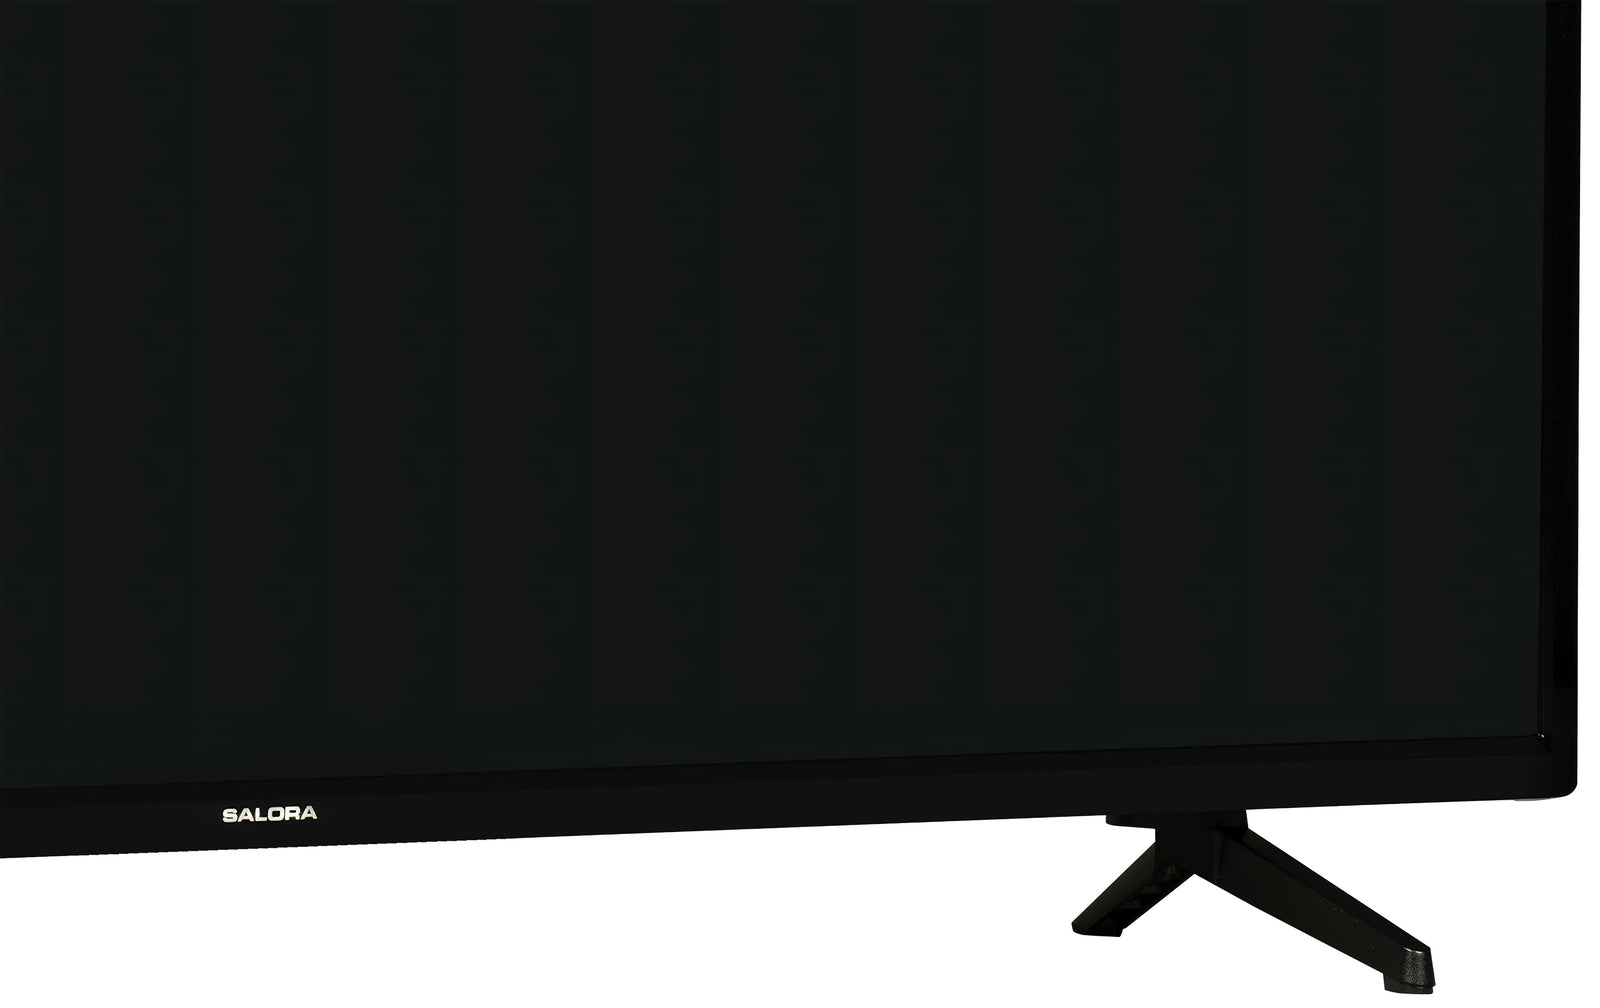 Salora 40FA220 Android smart TV